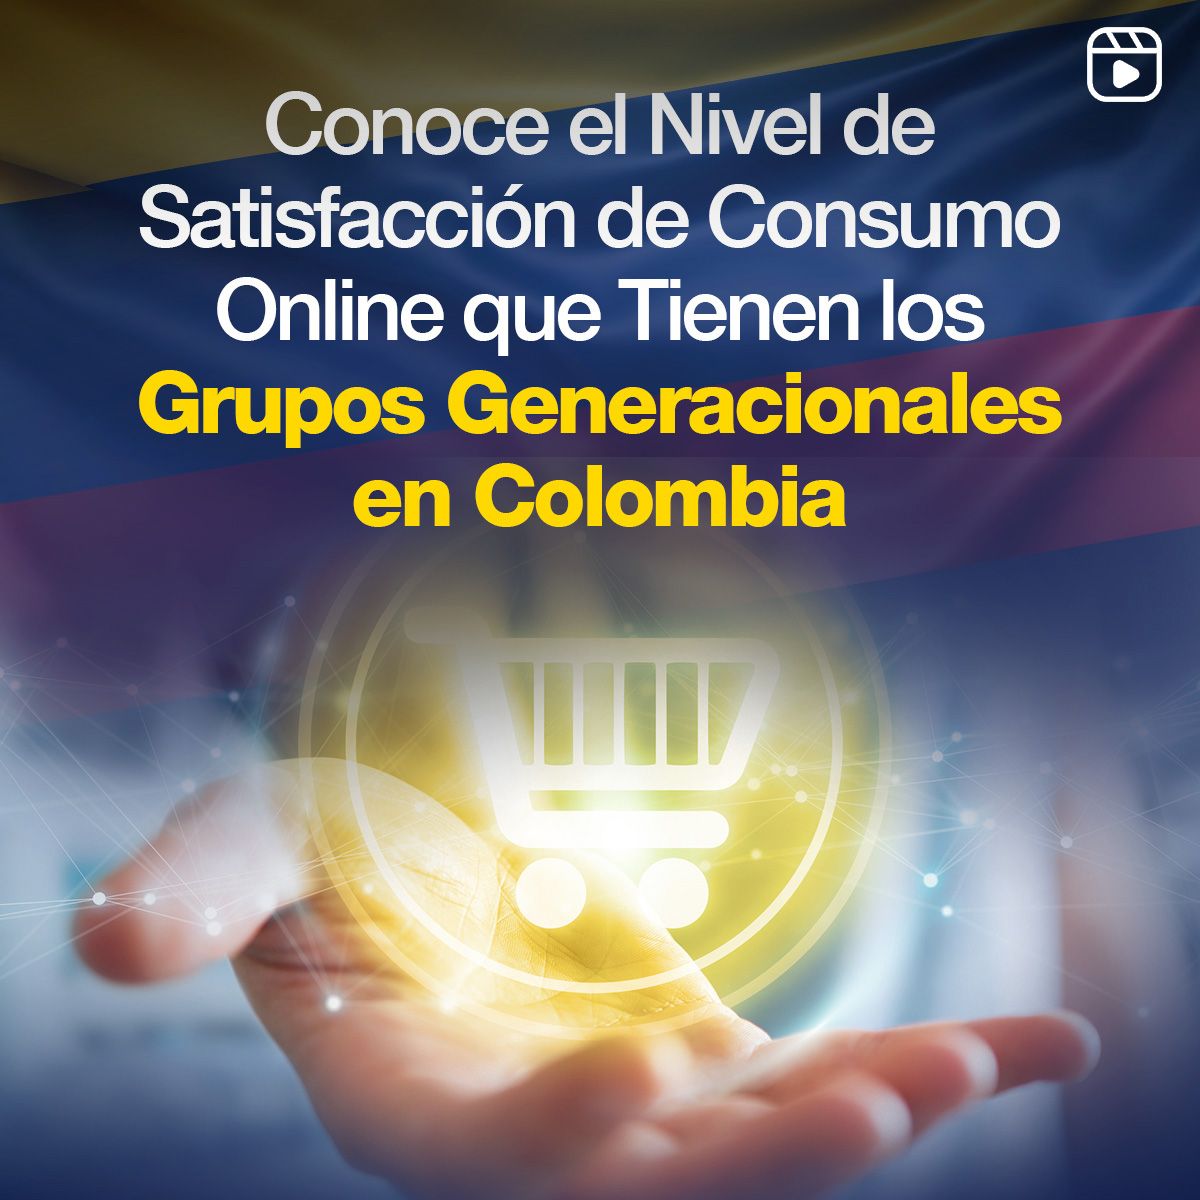 Conoce el Nivel de Satisfacción de Consumo Online que Tienen los Grupos Generacionales en Colombia